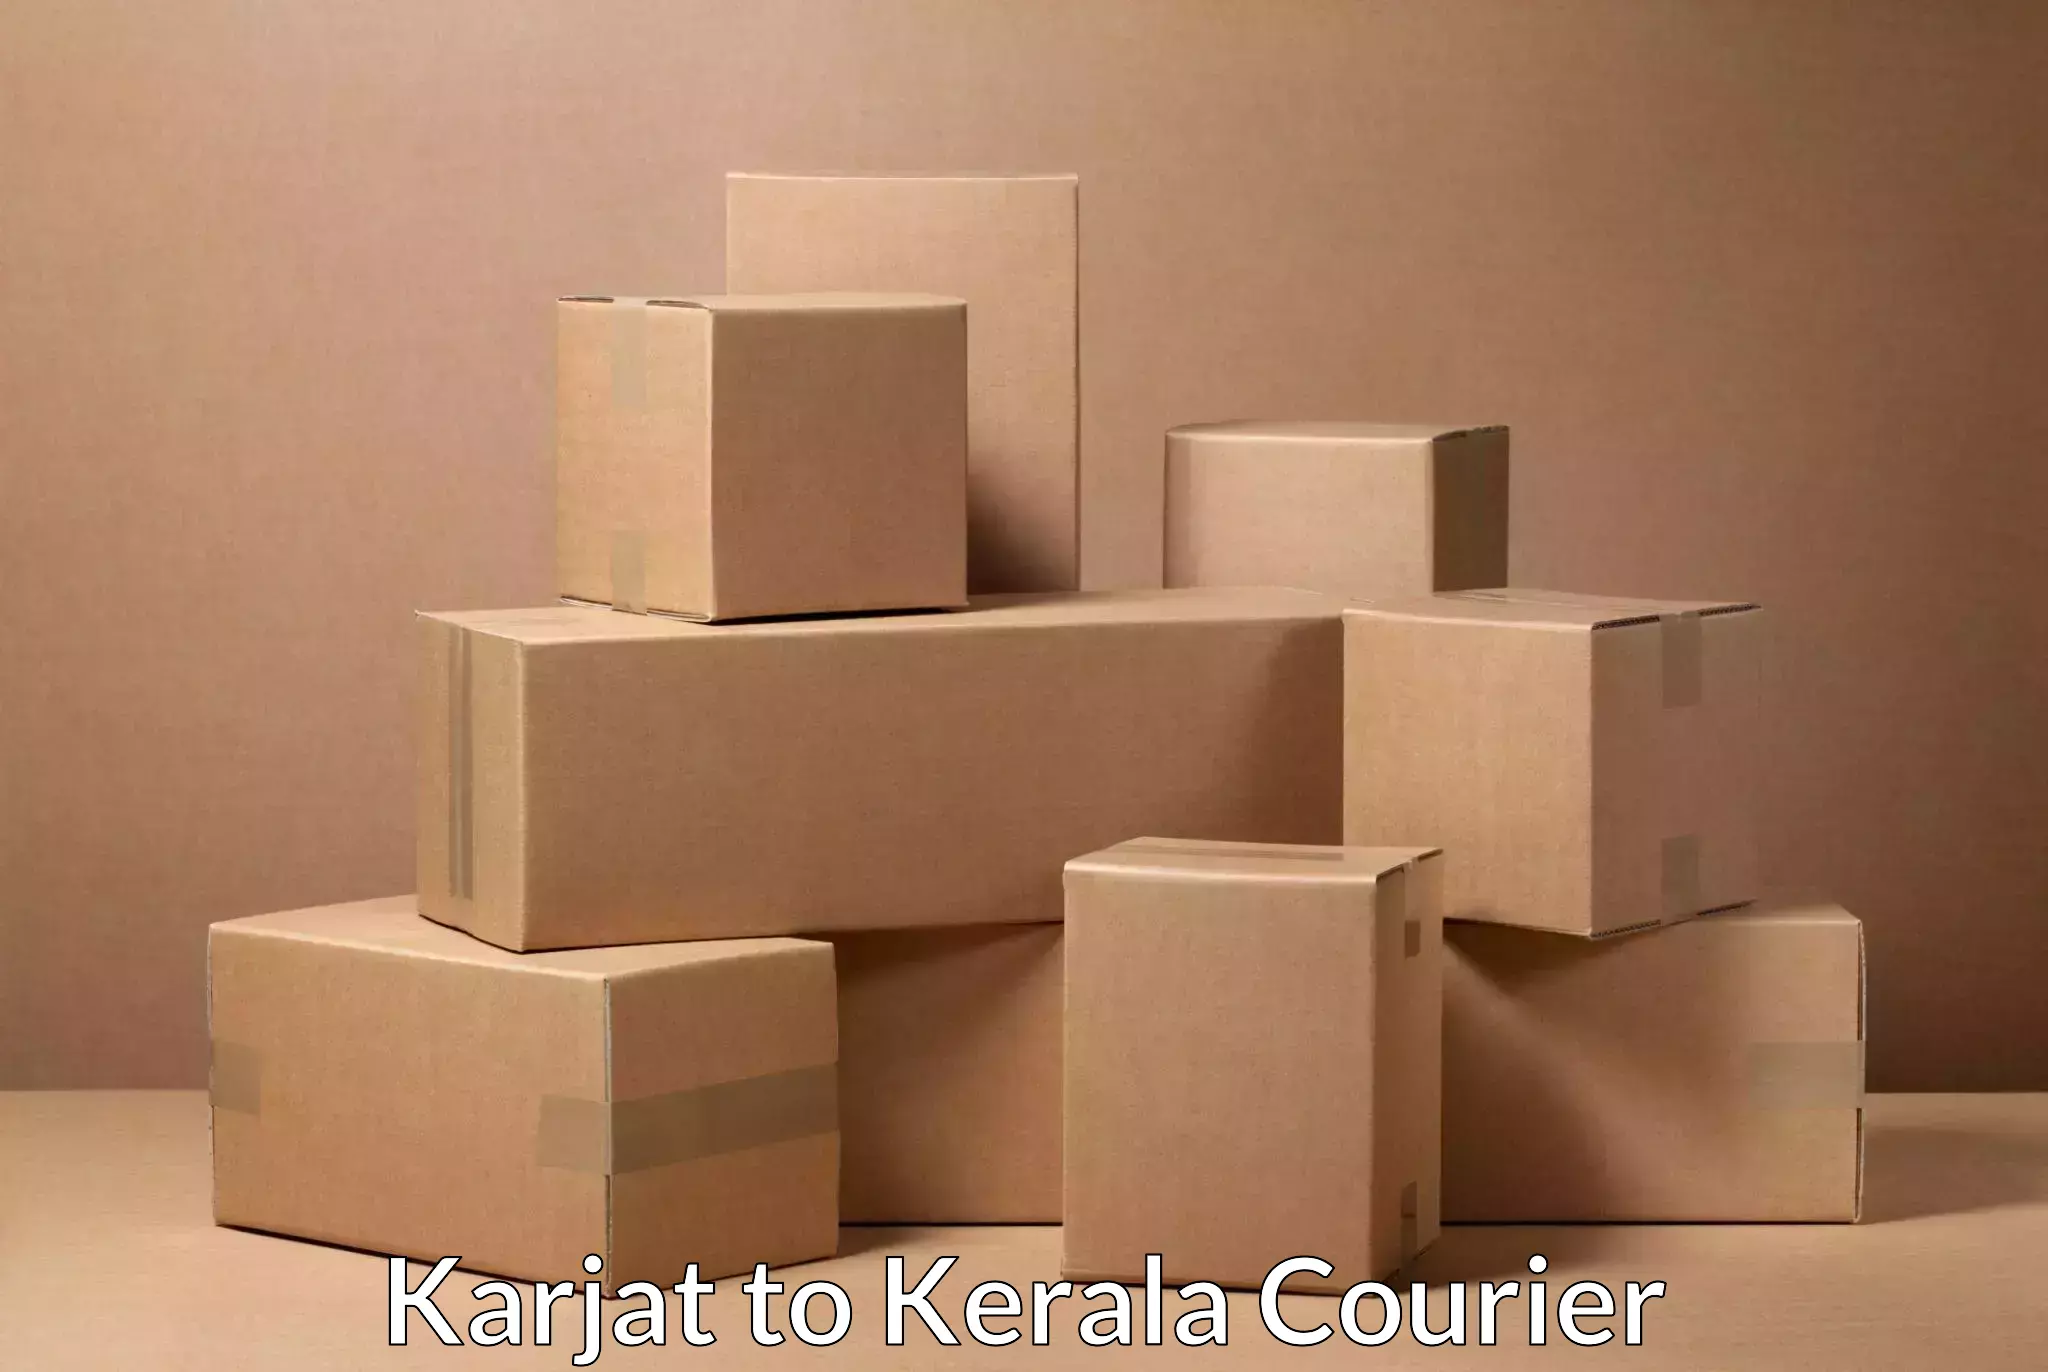 Global logistics network Karjat to Kerala